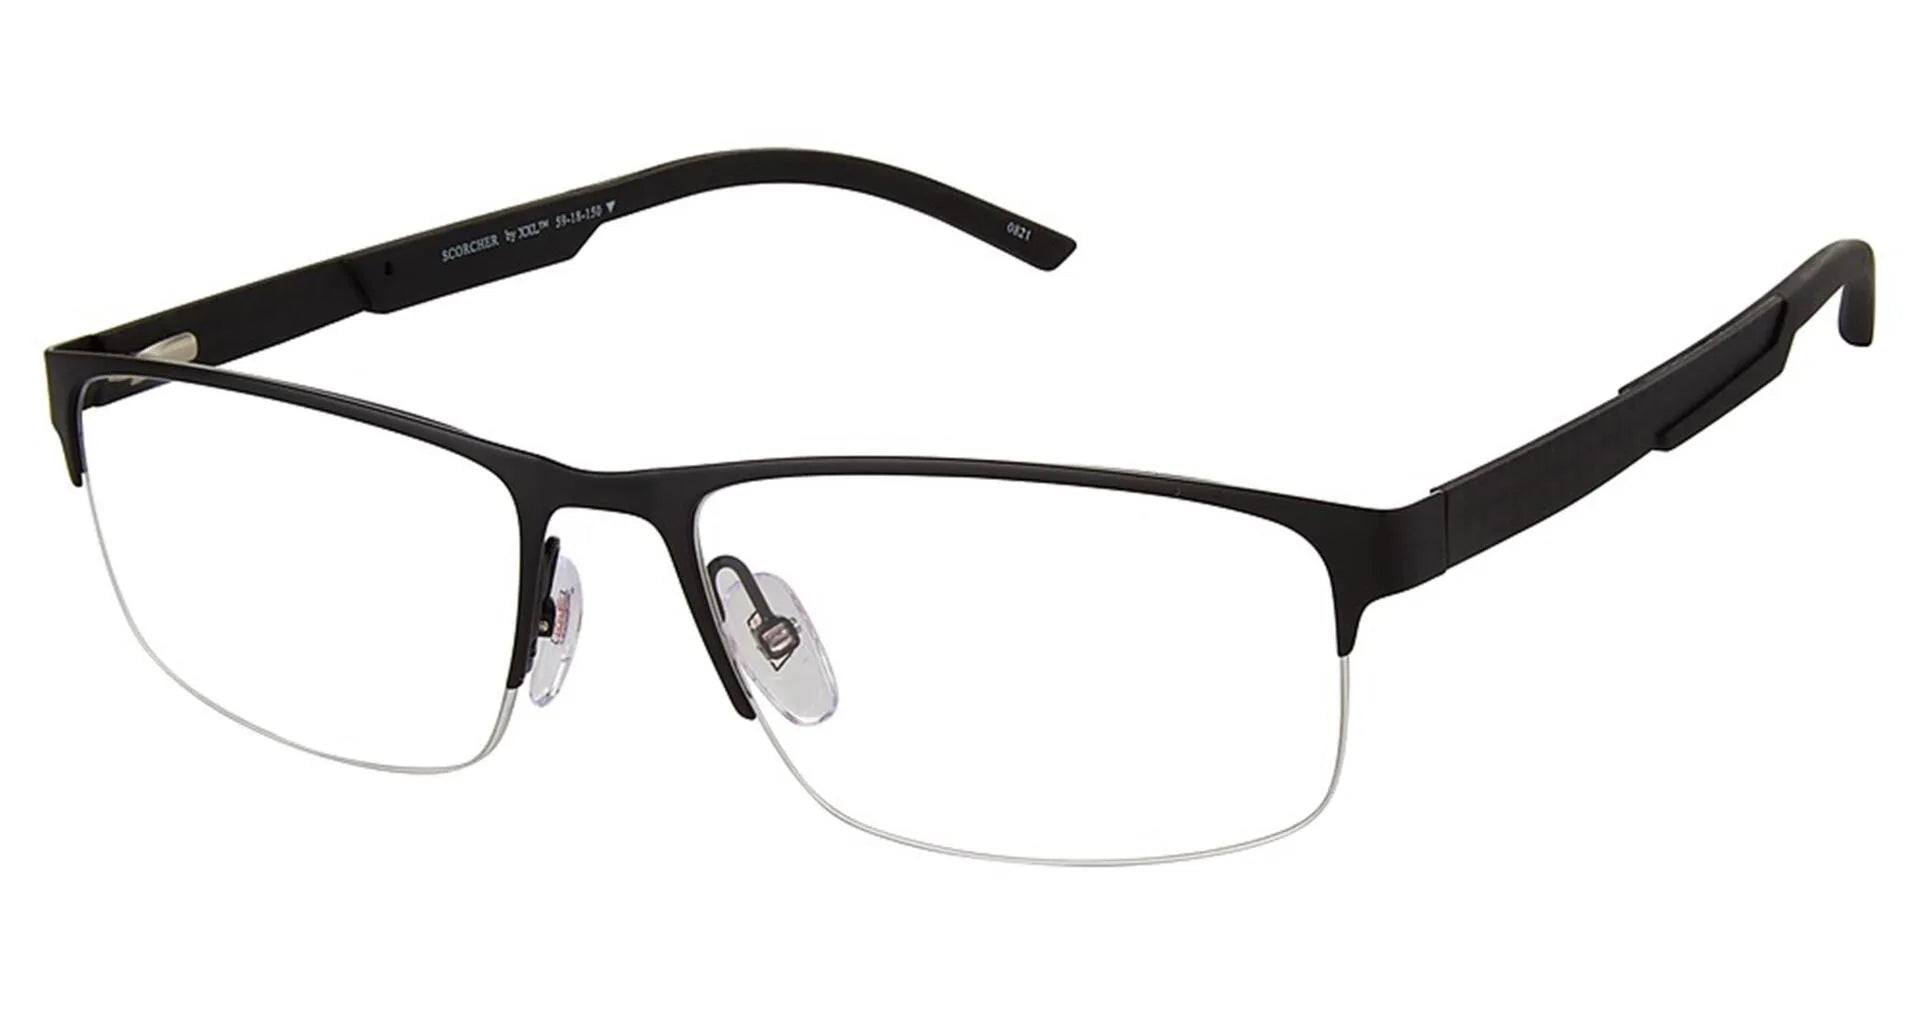 XXL Eyewear Scorcher Eyeglasses Black